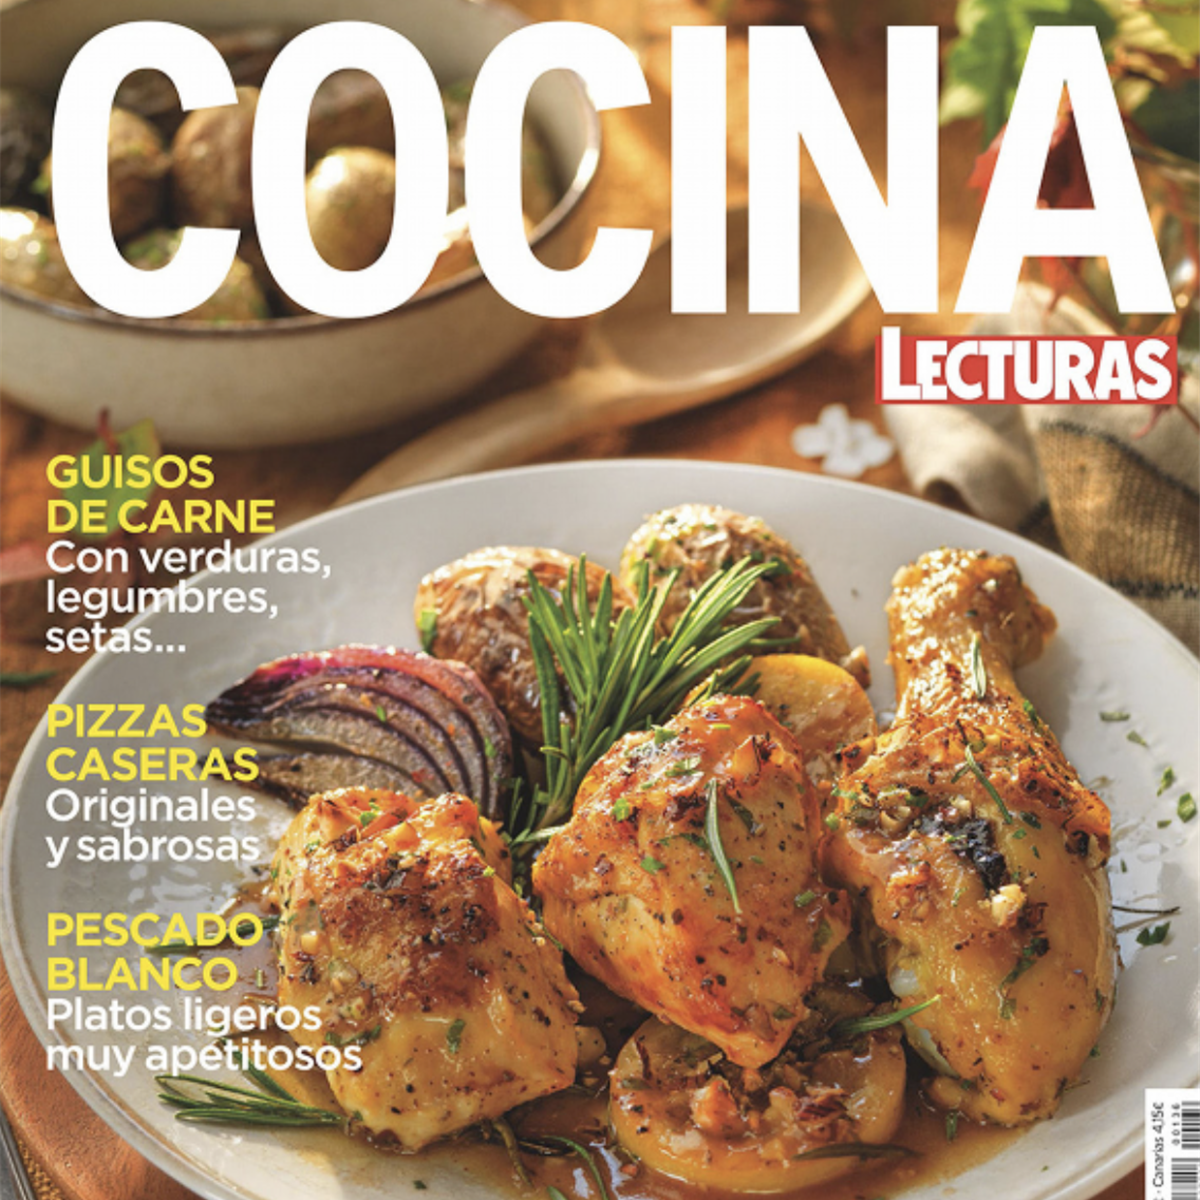 Las revistas de cocina de RBA, ahora también a la venta en Amazon